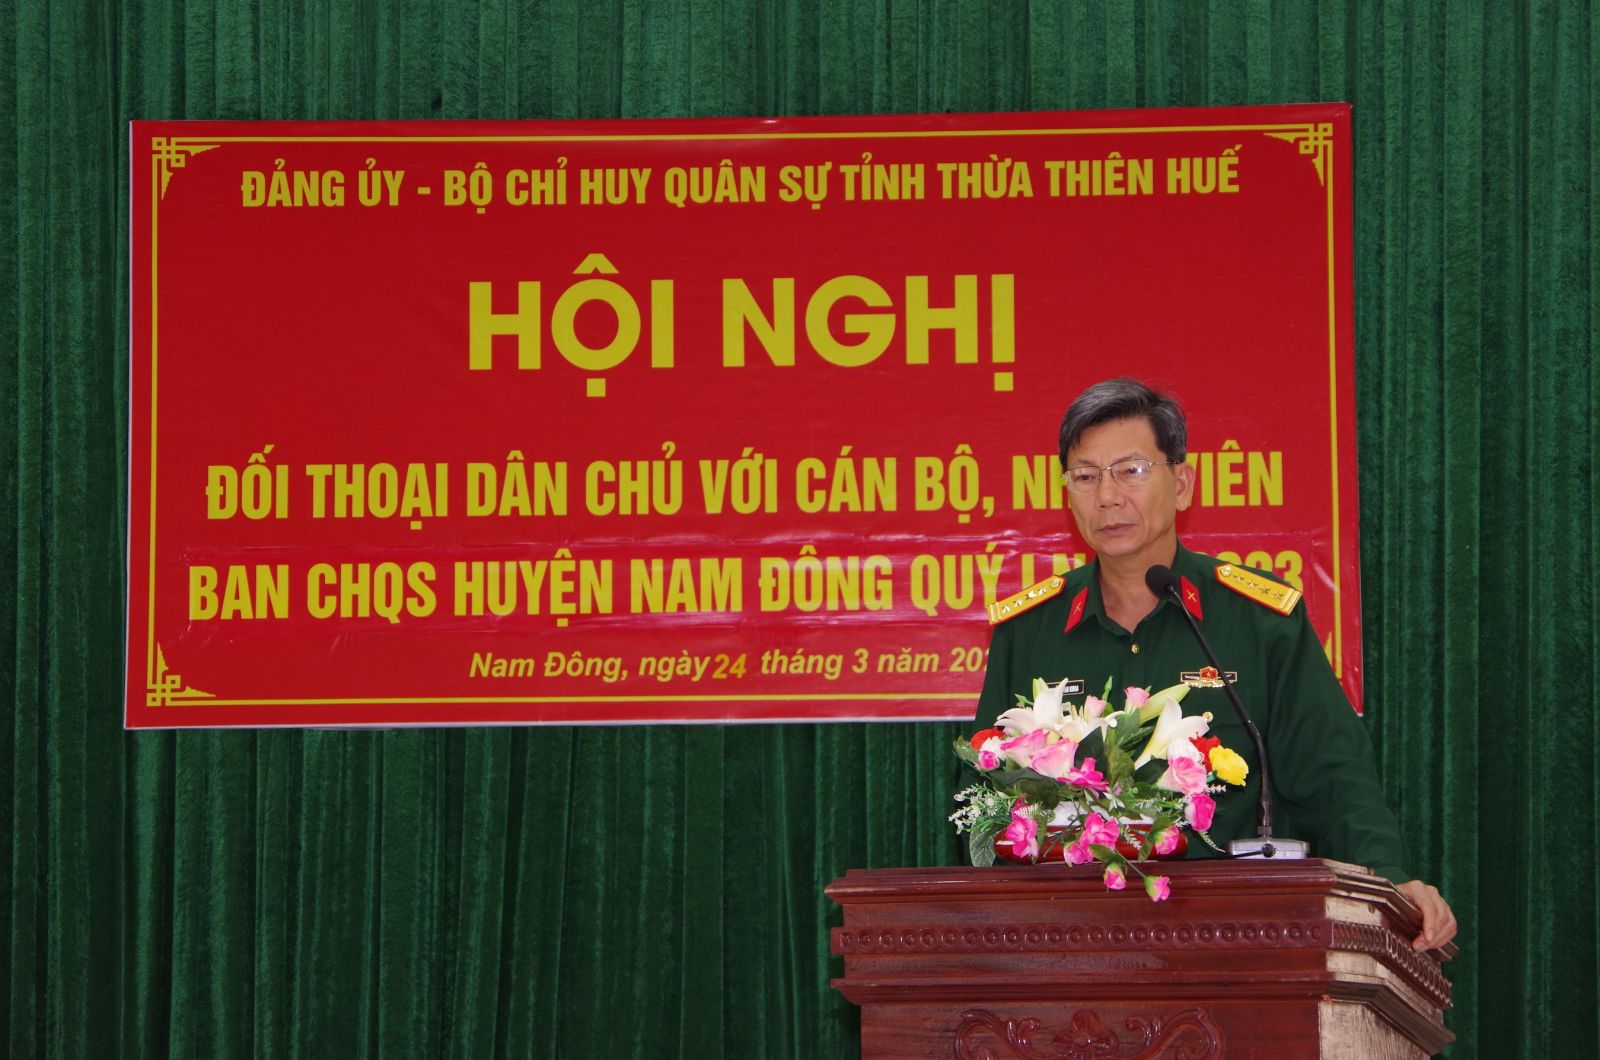 Đảng ủy, Bộ CHQS tỉnh đối thoại với cán bộ, nhân viên Ban CHQS huyện Nam Đông